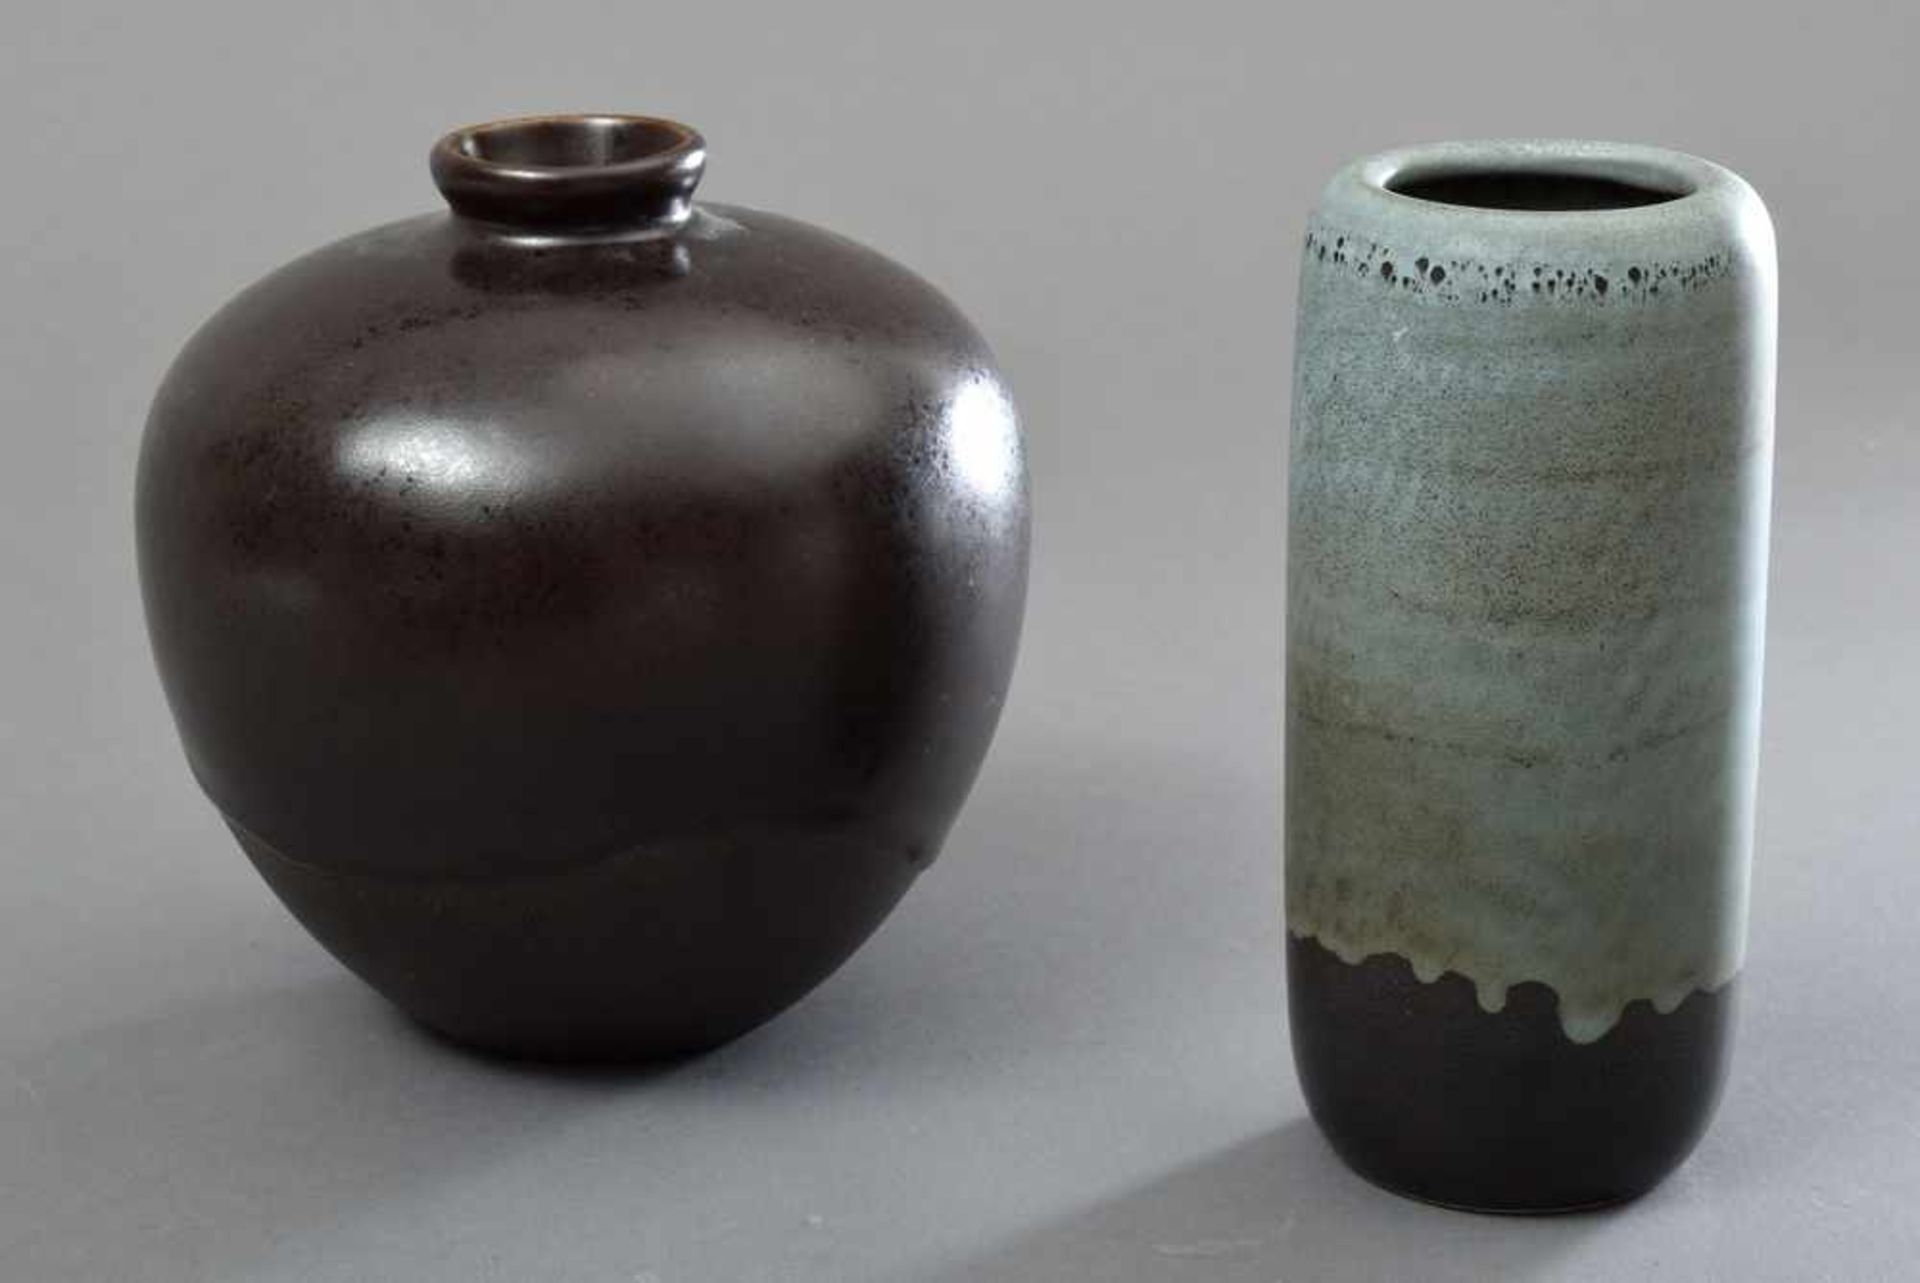 2 Diverse Beek, Jan Bontjes van (1899-1969) "Kugel- und Stangenvase", Keramik mit brauner Glanz-